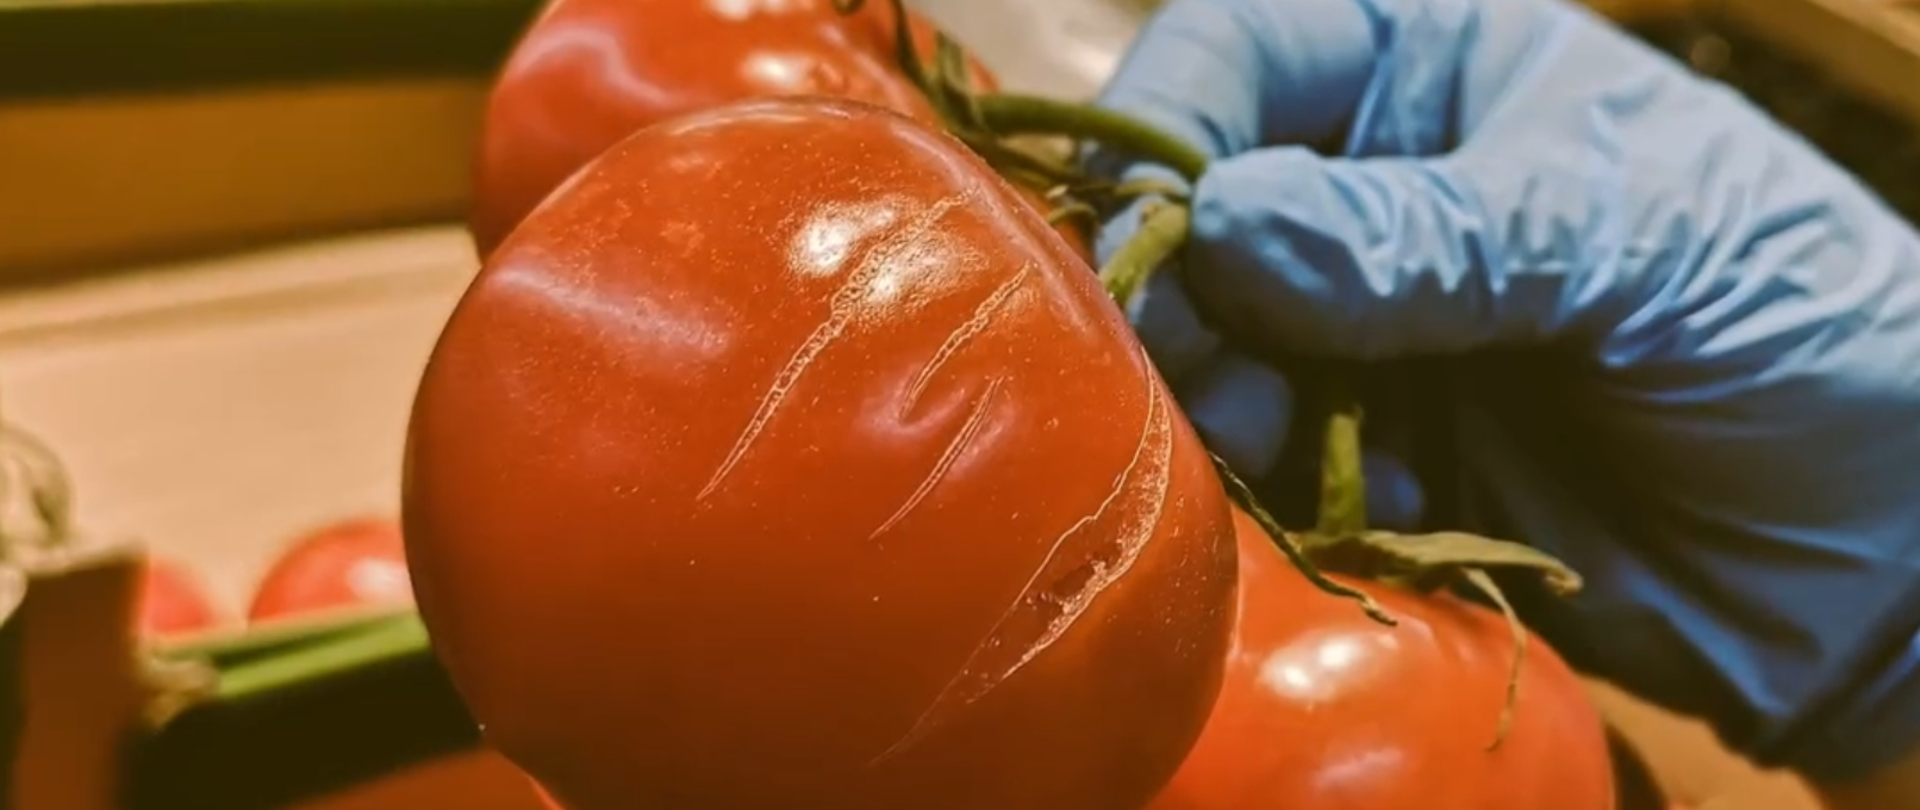 Kontrola jakości świeżych owoców i warzyw. Na zdjęciu uszkodzony pomidowr